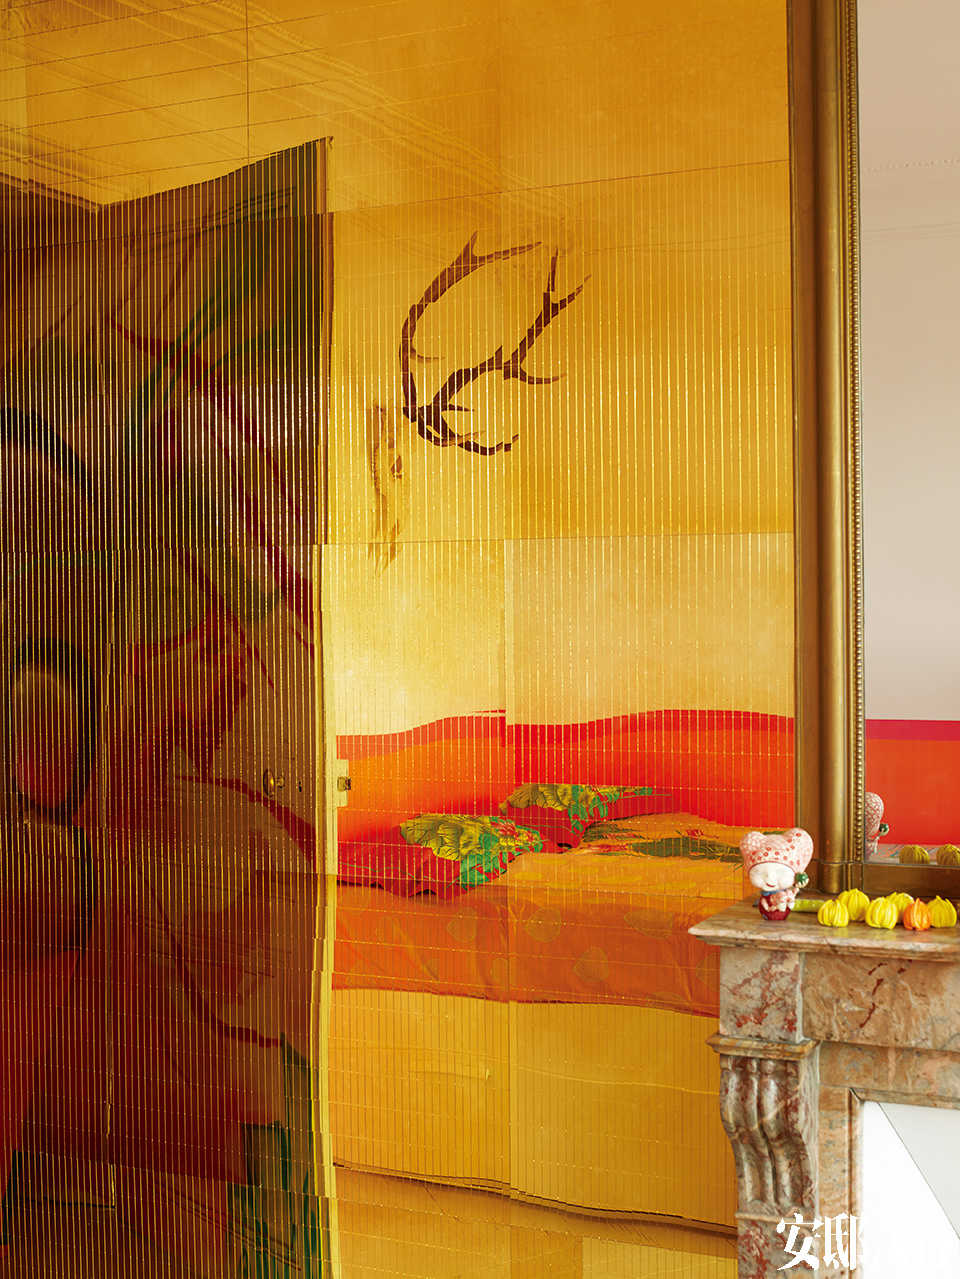 屏风上有印度的神话和宗教人物。金色镜面墙上映射出颜色香艳的床，镜面墙来自巴黎的King Mirror。